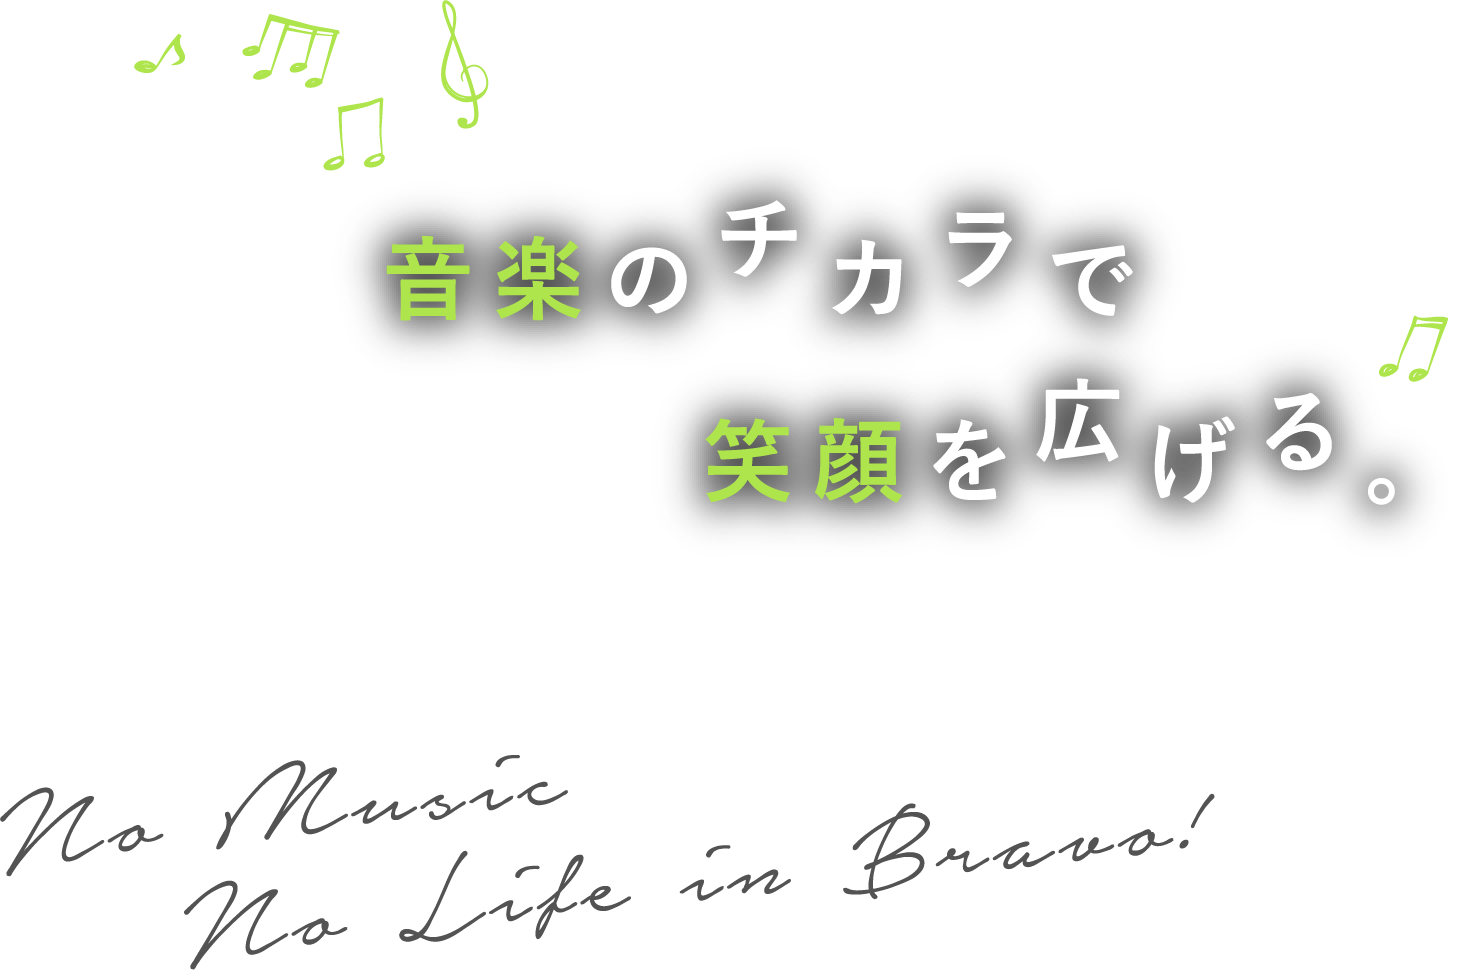 音楽のチカラで笑顔を広げる / No Music No Life Bravo!